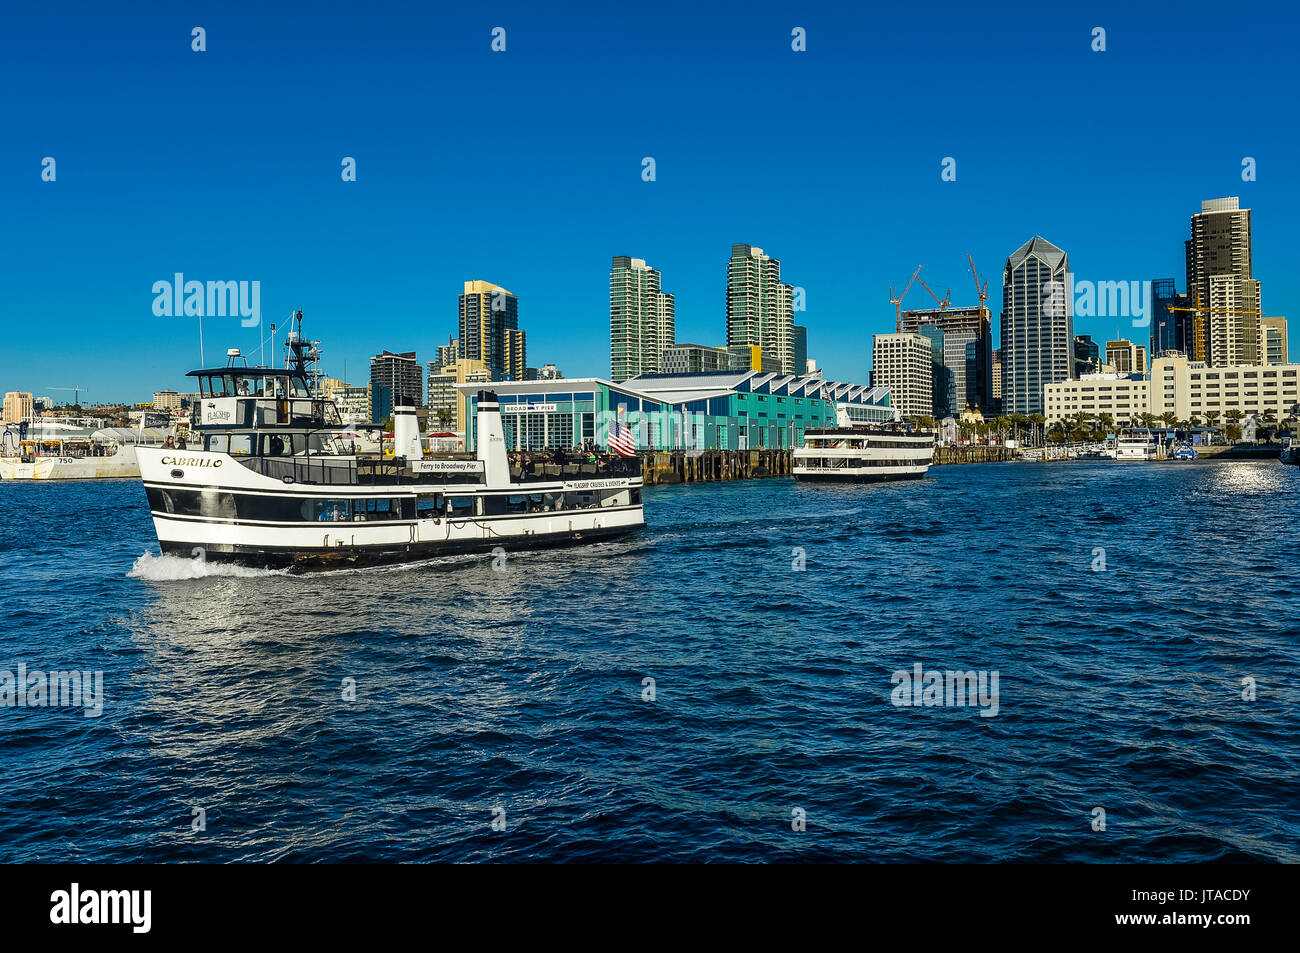 Petit bateau de croisière touristique avec le paysage en arrière-plan, le Port de San Diego, Californie, États-Unis d'Amérique, Amérique du Nord Banque D'Images